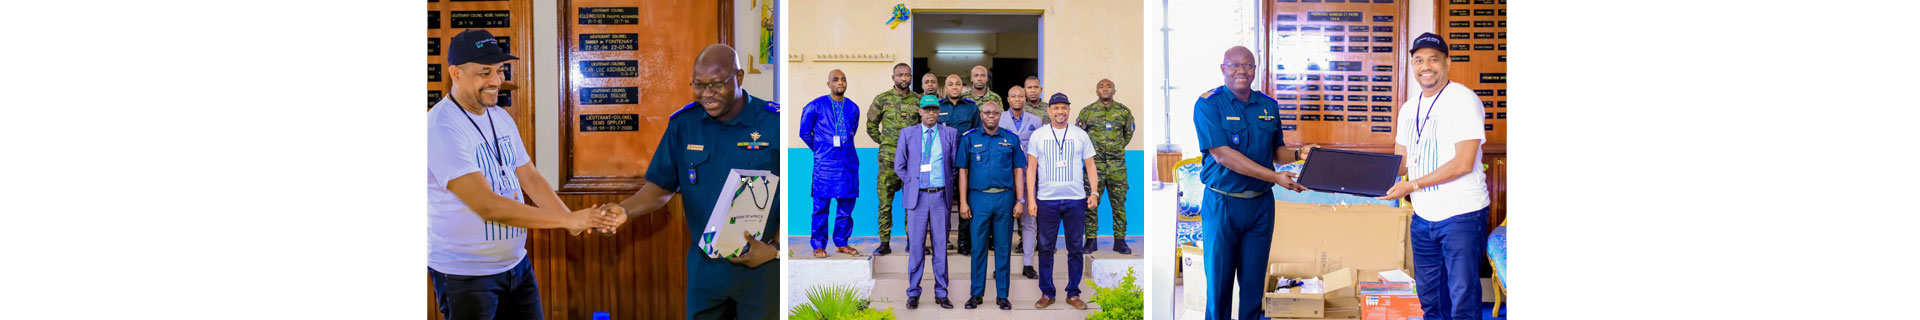 BOA-CÔTE D’IVOIRE avec les fonctionnaires